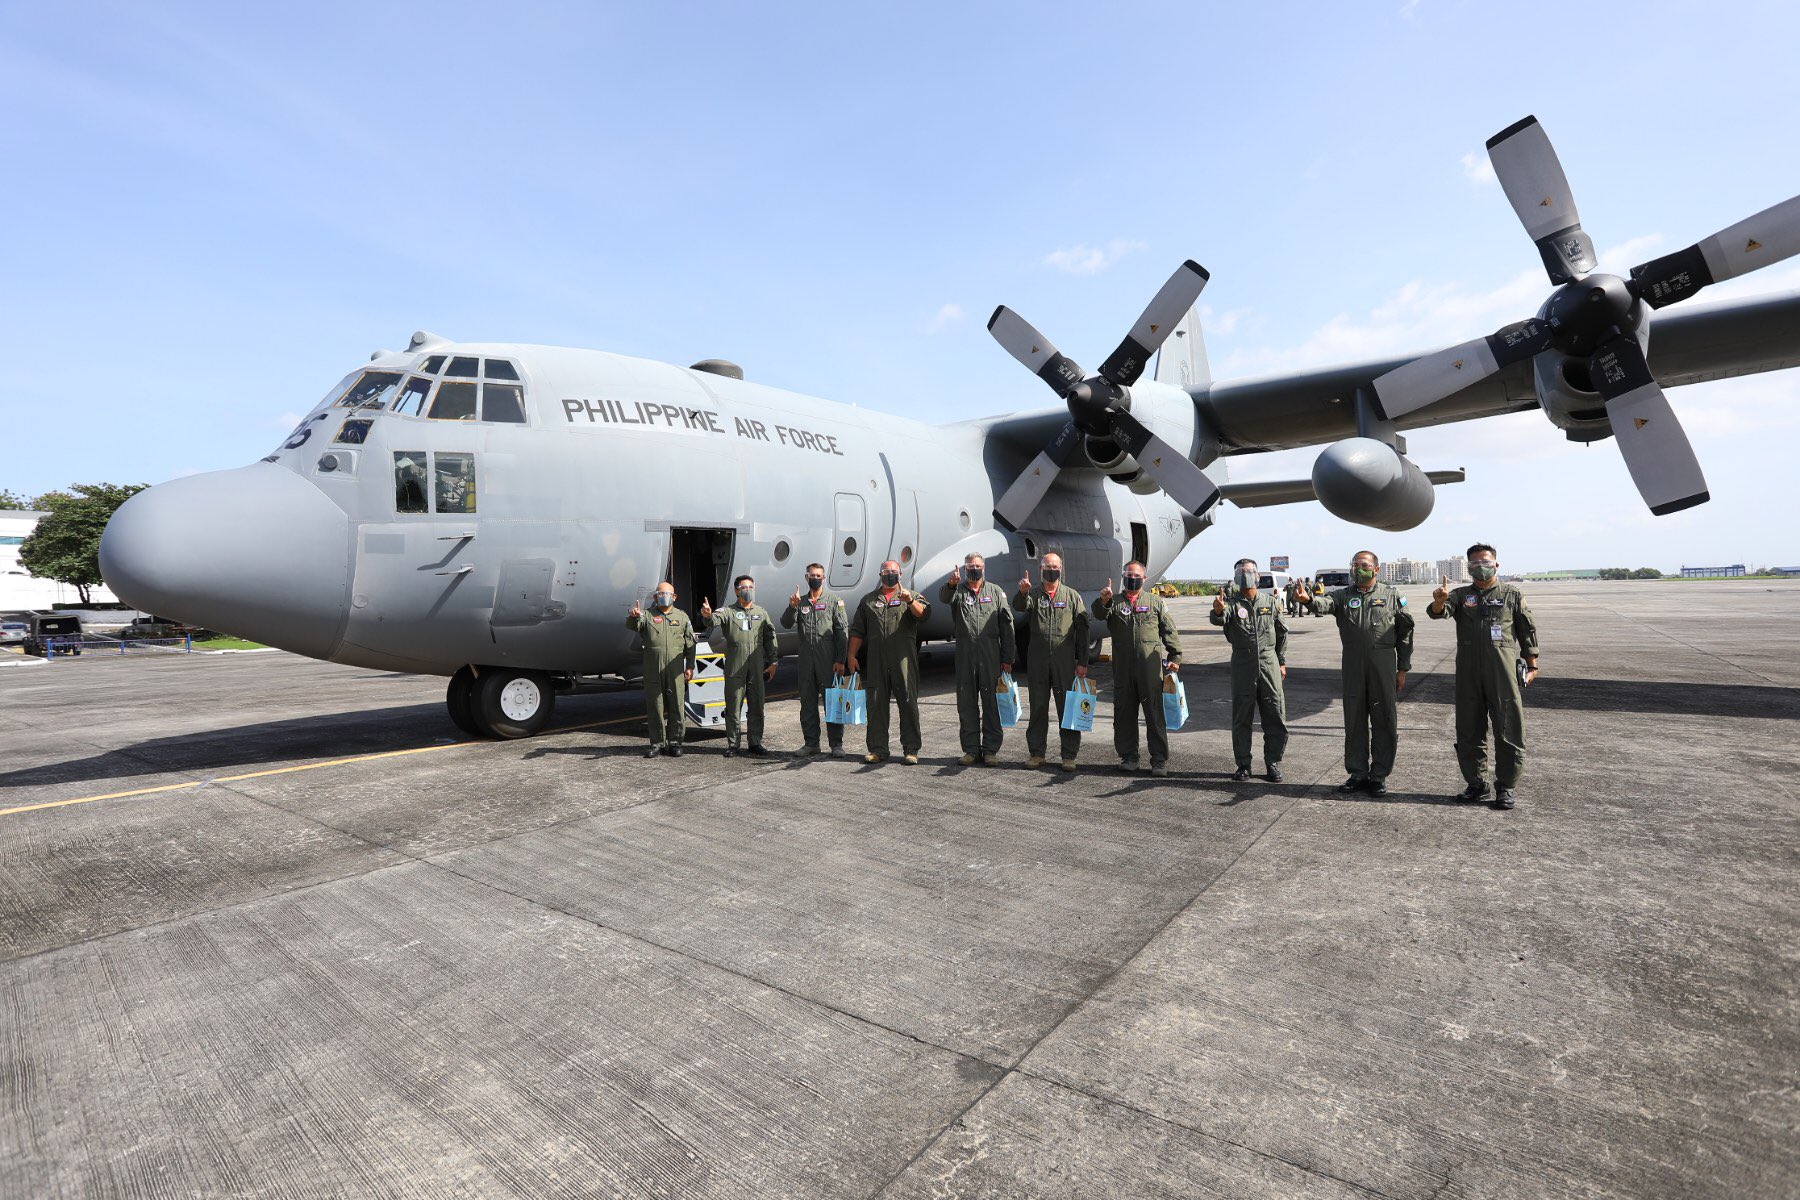 菲律宾坠毁军机曾在美服役多年:花上亿人民币购入 今年刚交付